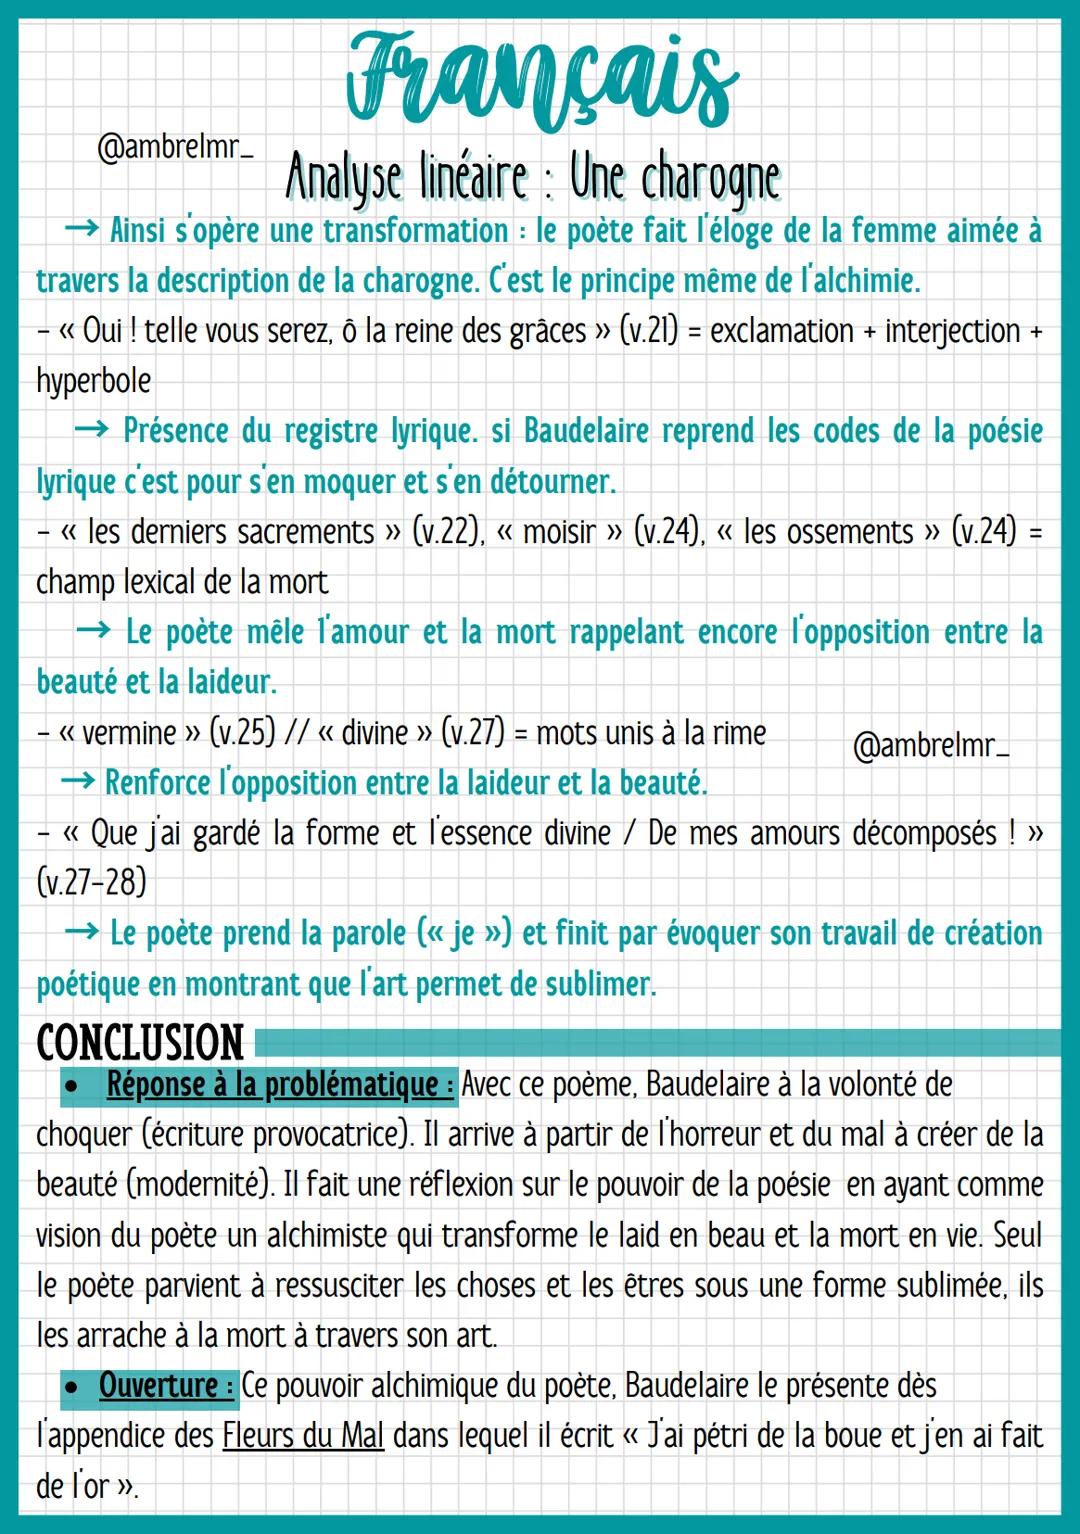 Français
@ambrelmr_ Analyse linéaire: Une charogne
Vers 1 à 2: L'évocation d'un souvenir heureux
- « Une charogne »> = groupe nominal (déter